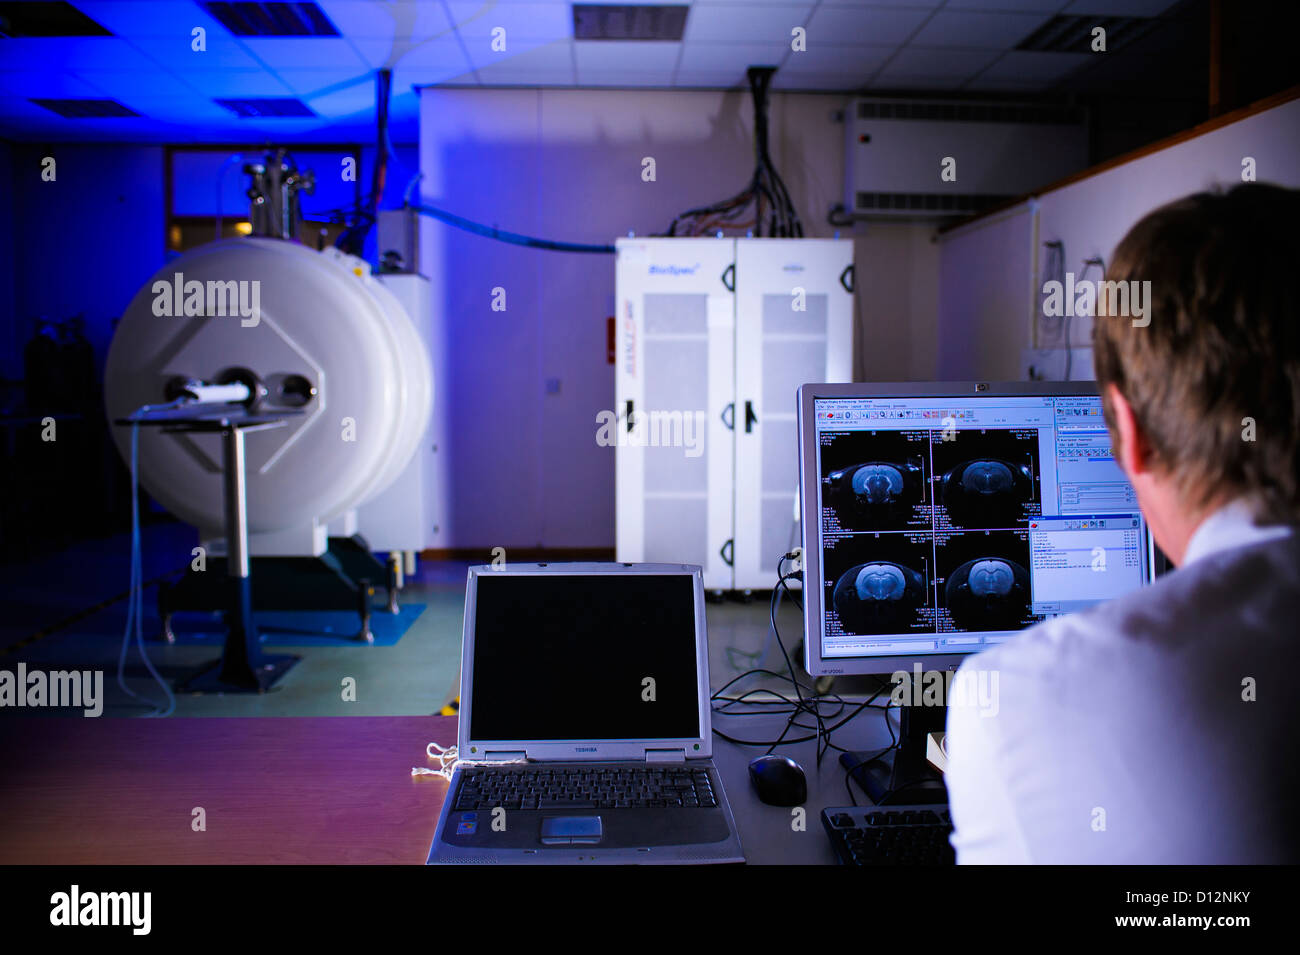 Technicien ou scientifique évalue l'image de l'ordinateur à l'écran moniteur à partir d'un petit orifice de l'imagerie par résonance magnétique (IRM) Banque D'Images